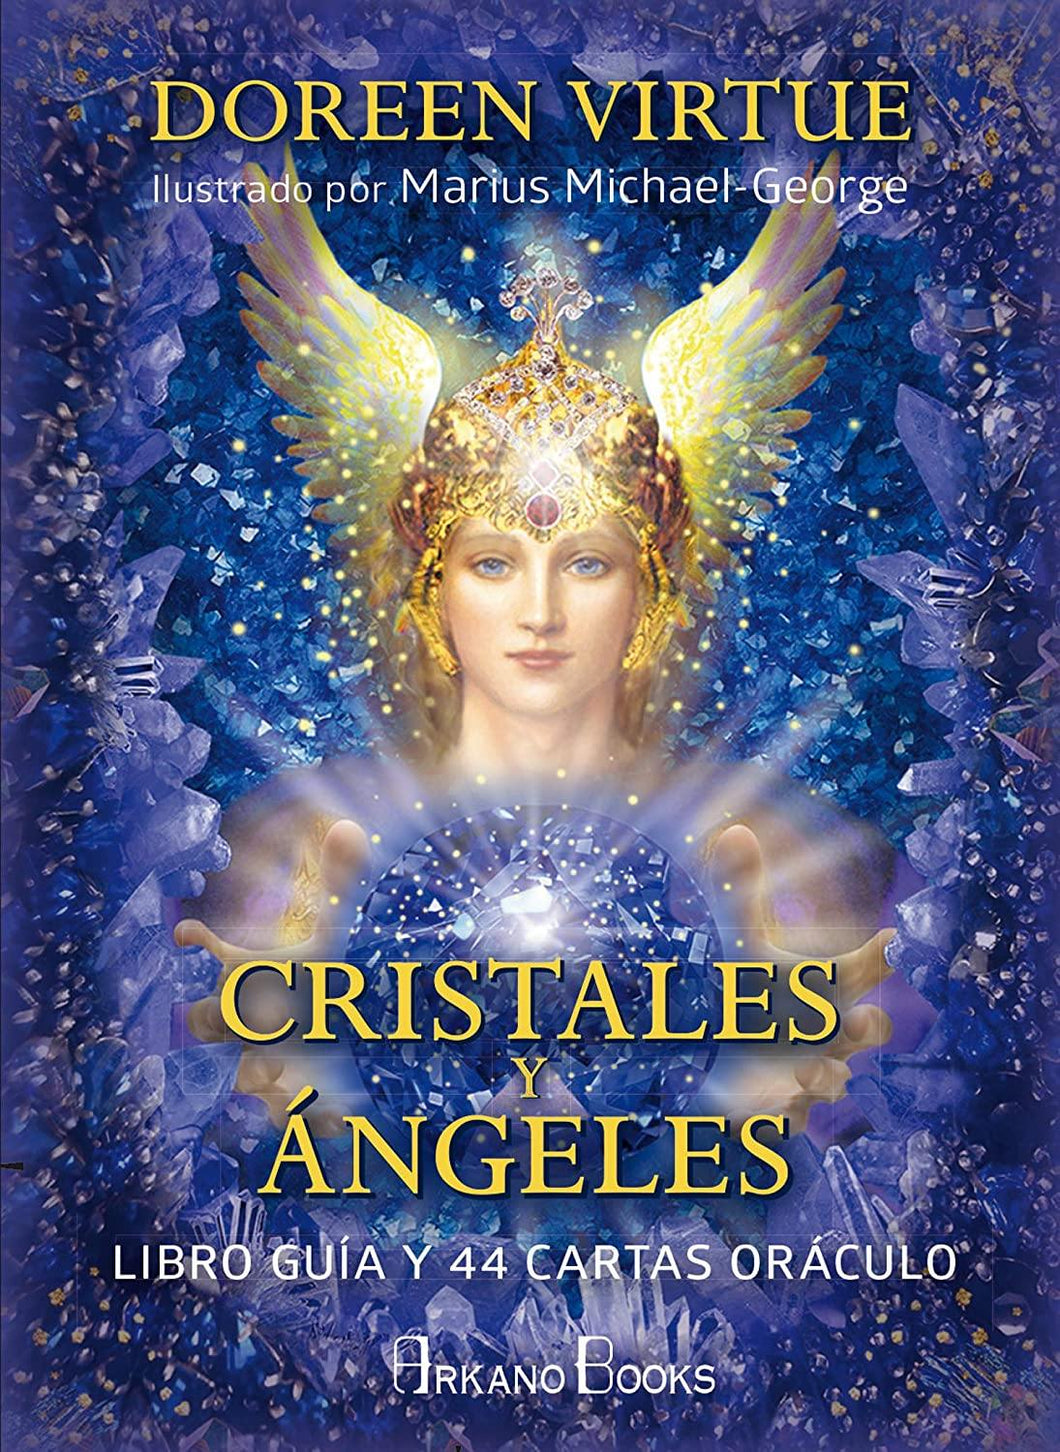 Cartas de oráculo cristales y ángeles - Antevasin's Store